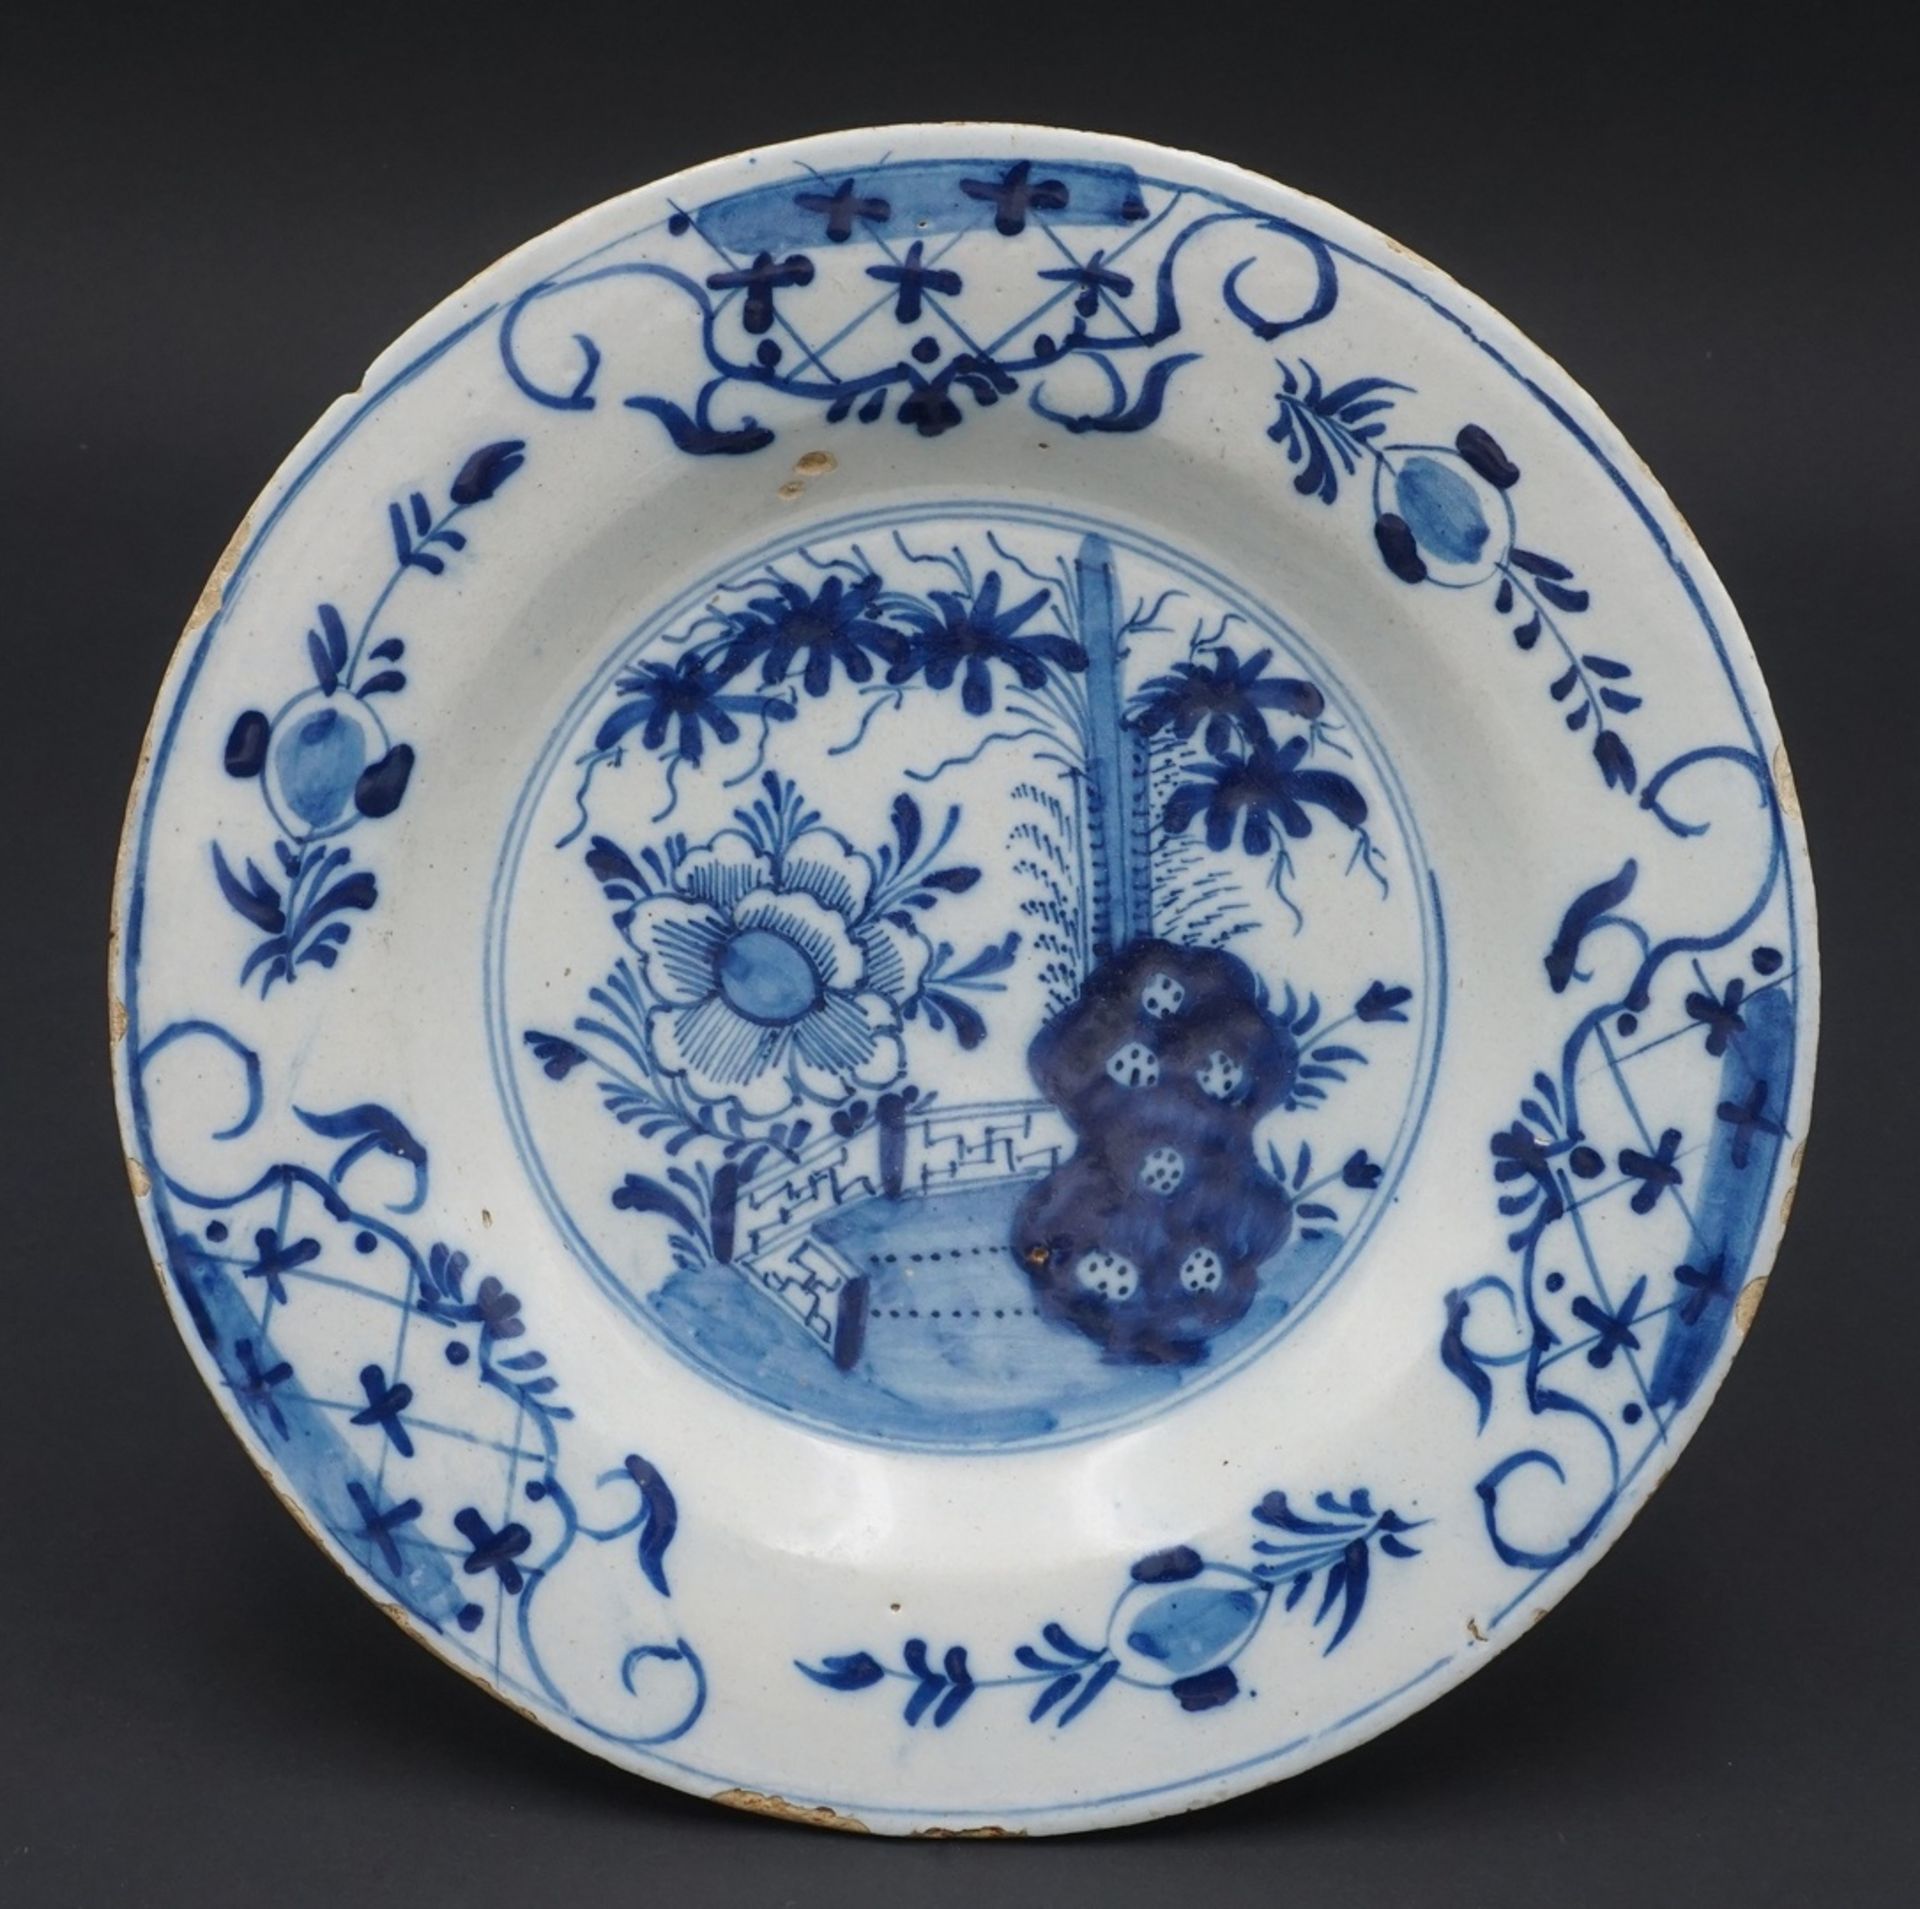 Wohl Delft Teller mit chinesischen Dekor, 1. Hälfte 18. Jh.Unterglasurmalerei, rückseitig drei